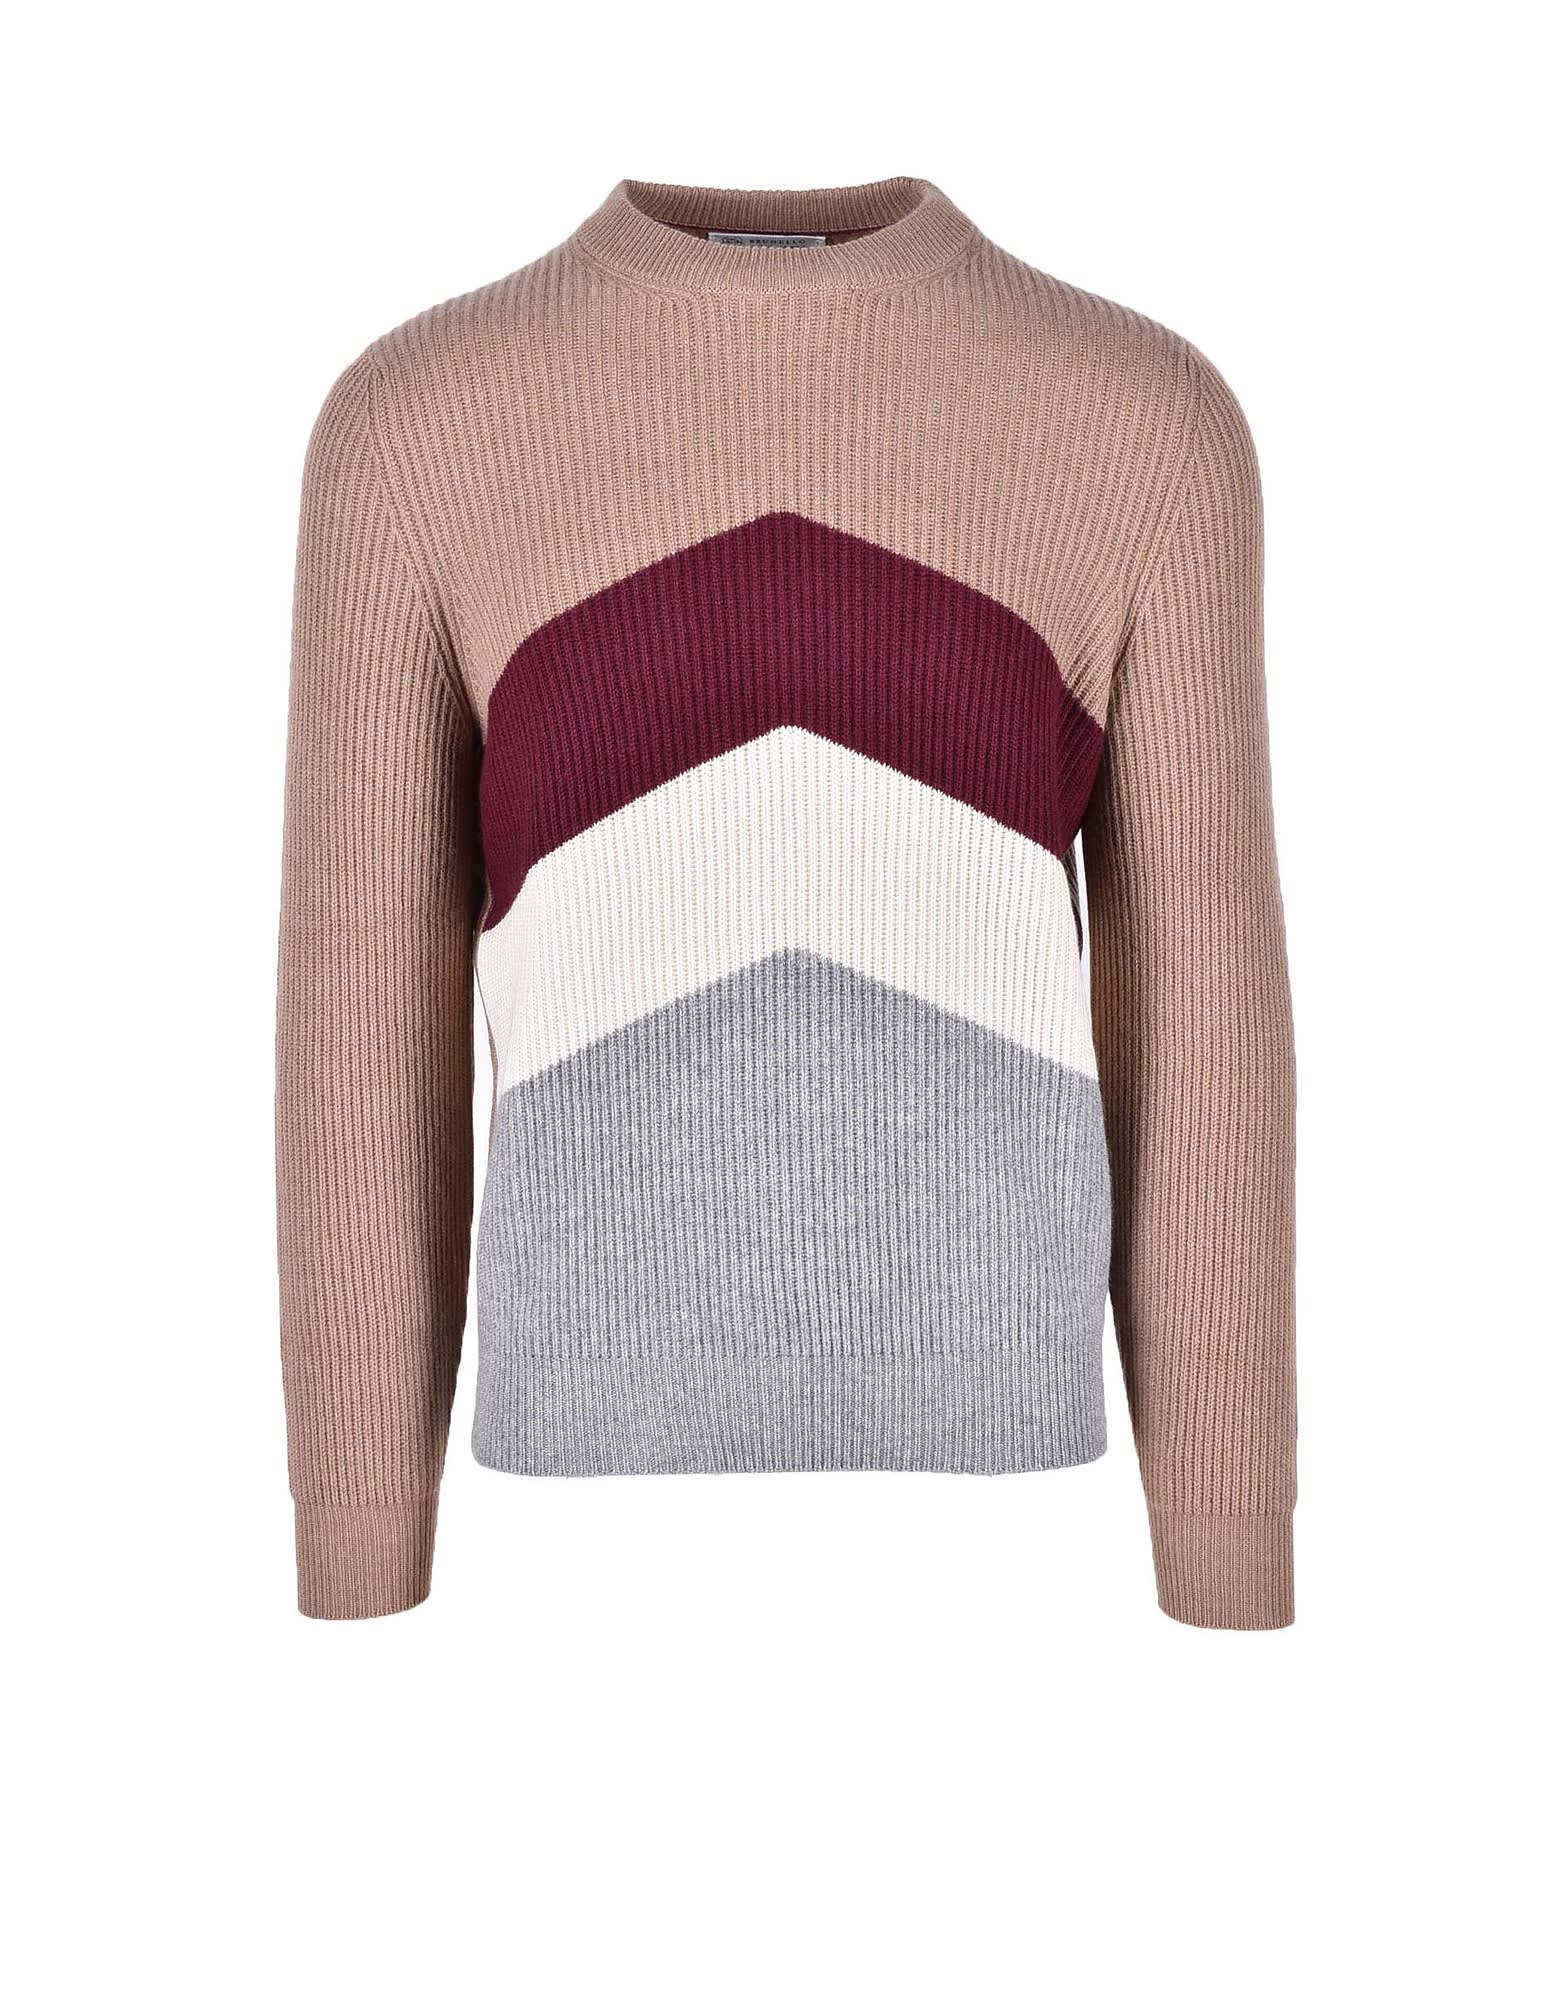 Brunello Cucinelli Mens Multicolor Sweater